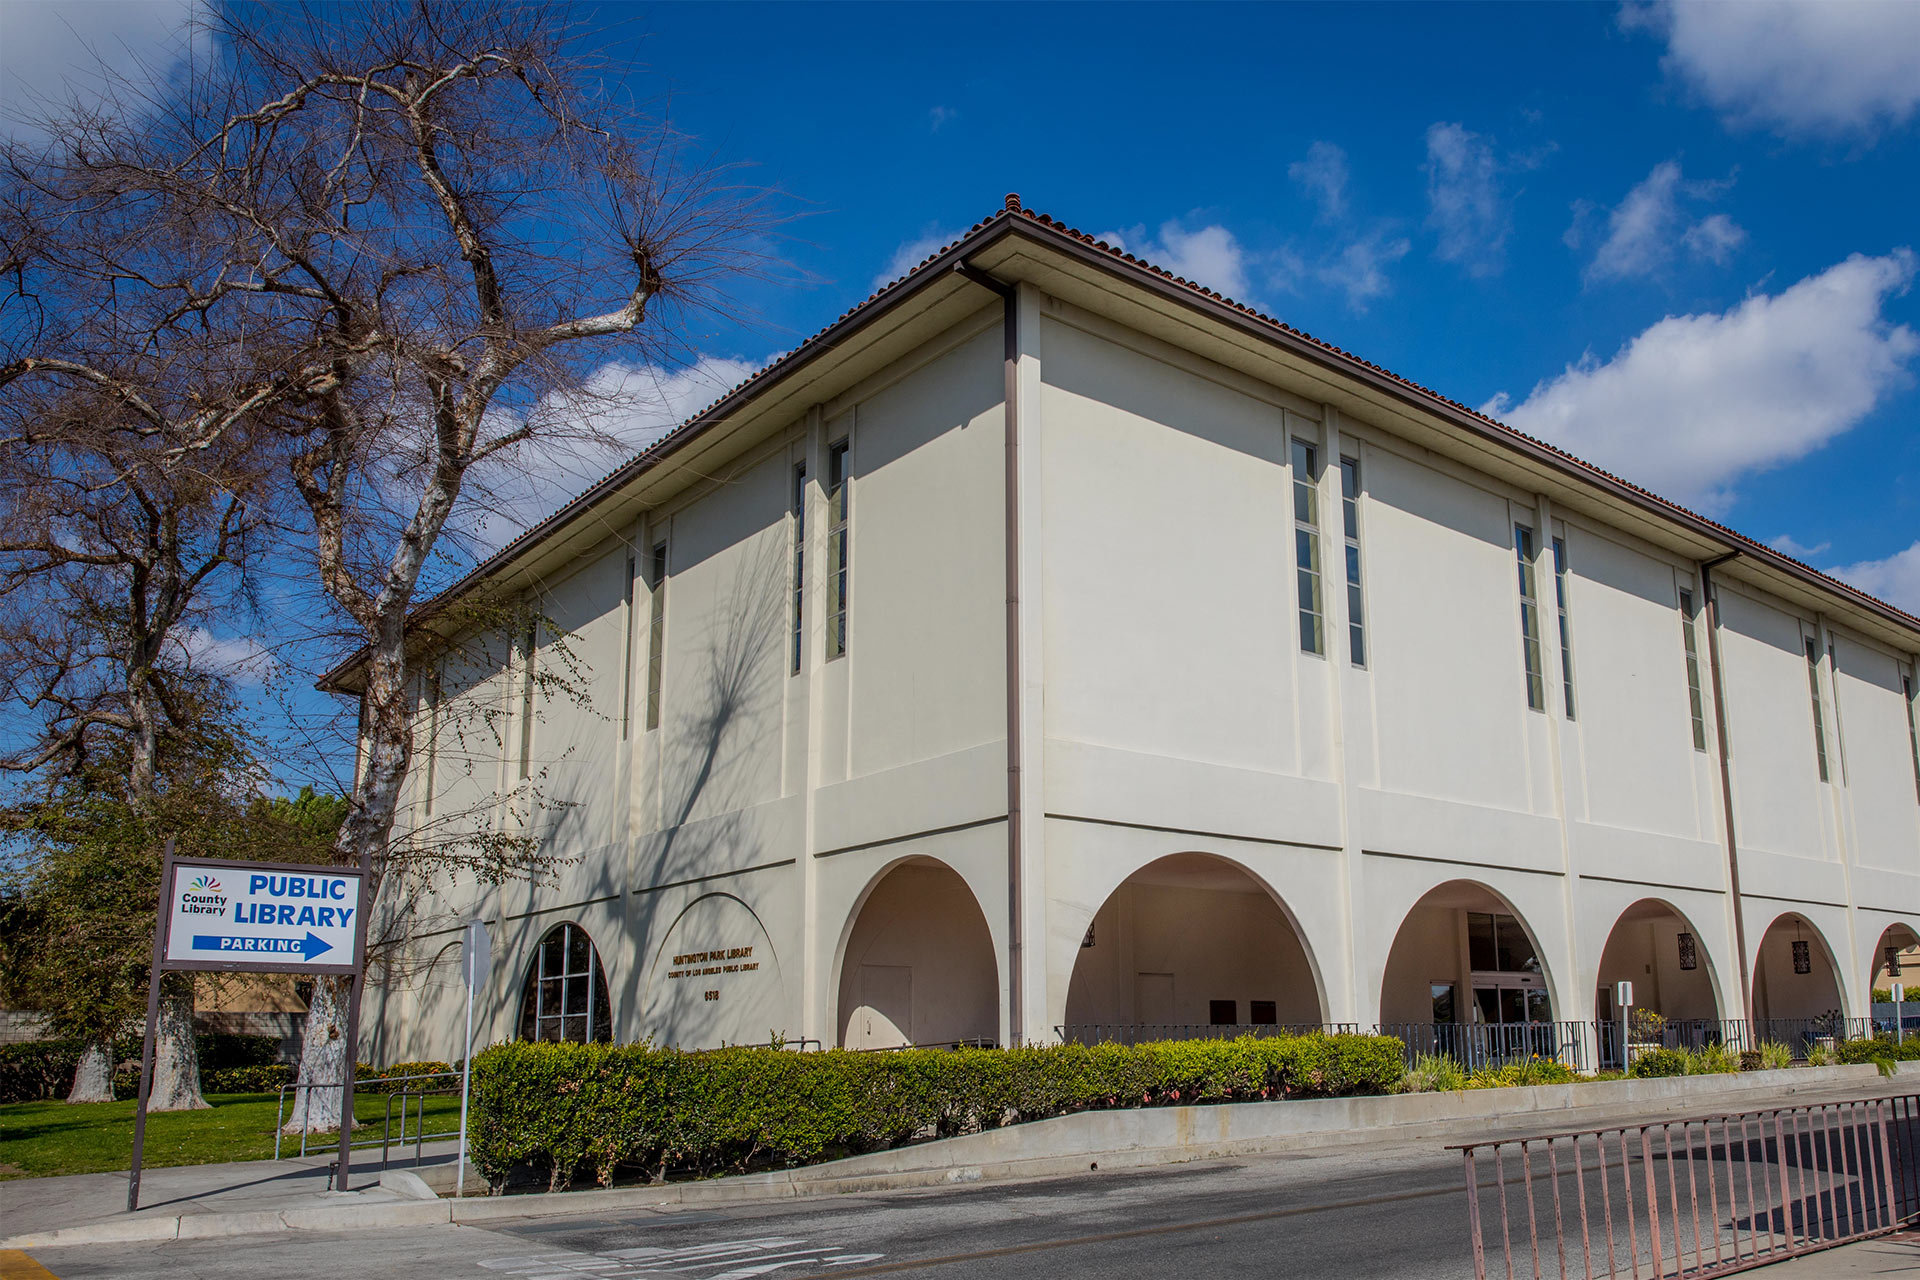 洛杉矶县有33座地震中处危险的建筑物 含杭庭顿图书馆